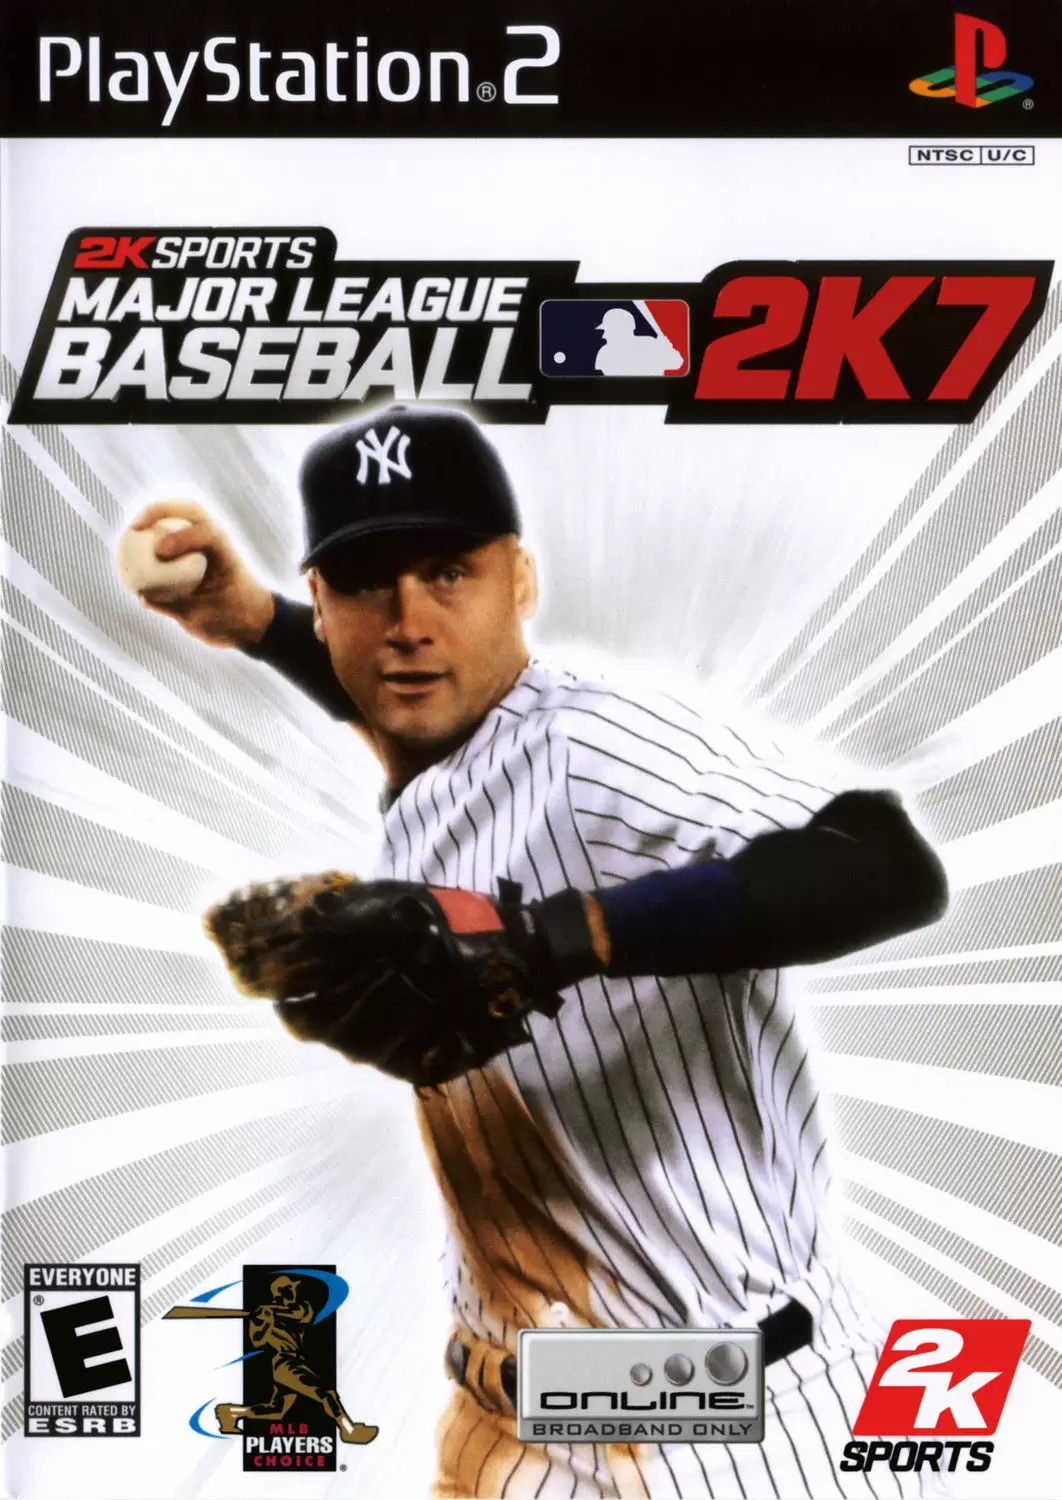 PS2 Games - Major League Baseball 2K7